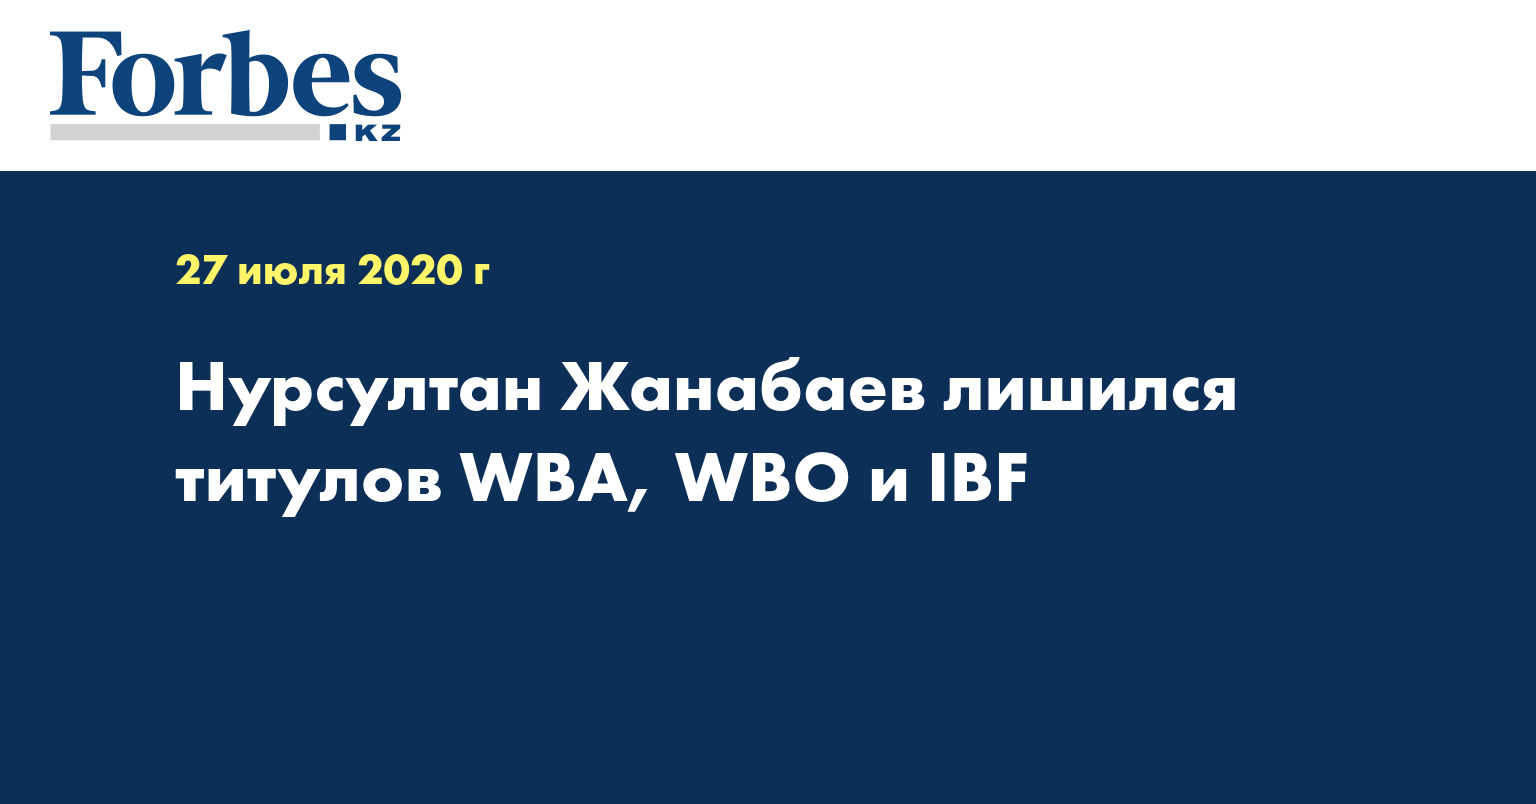 Нурсултан Жанабаев лишился титулов WBA, WBO и IBF